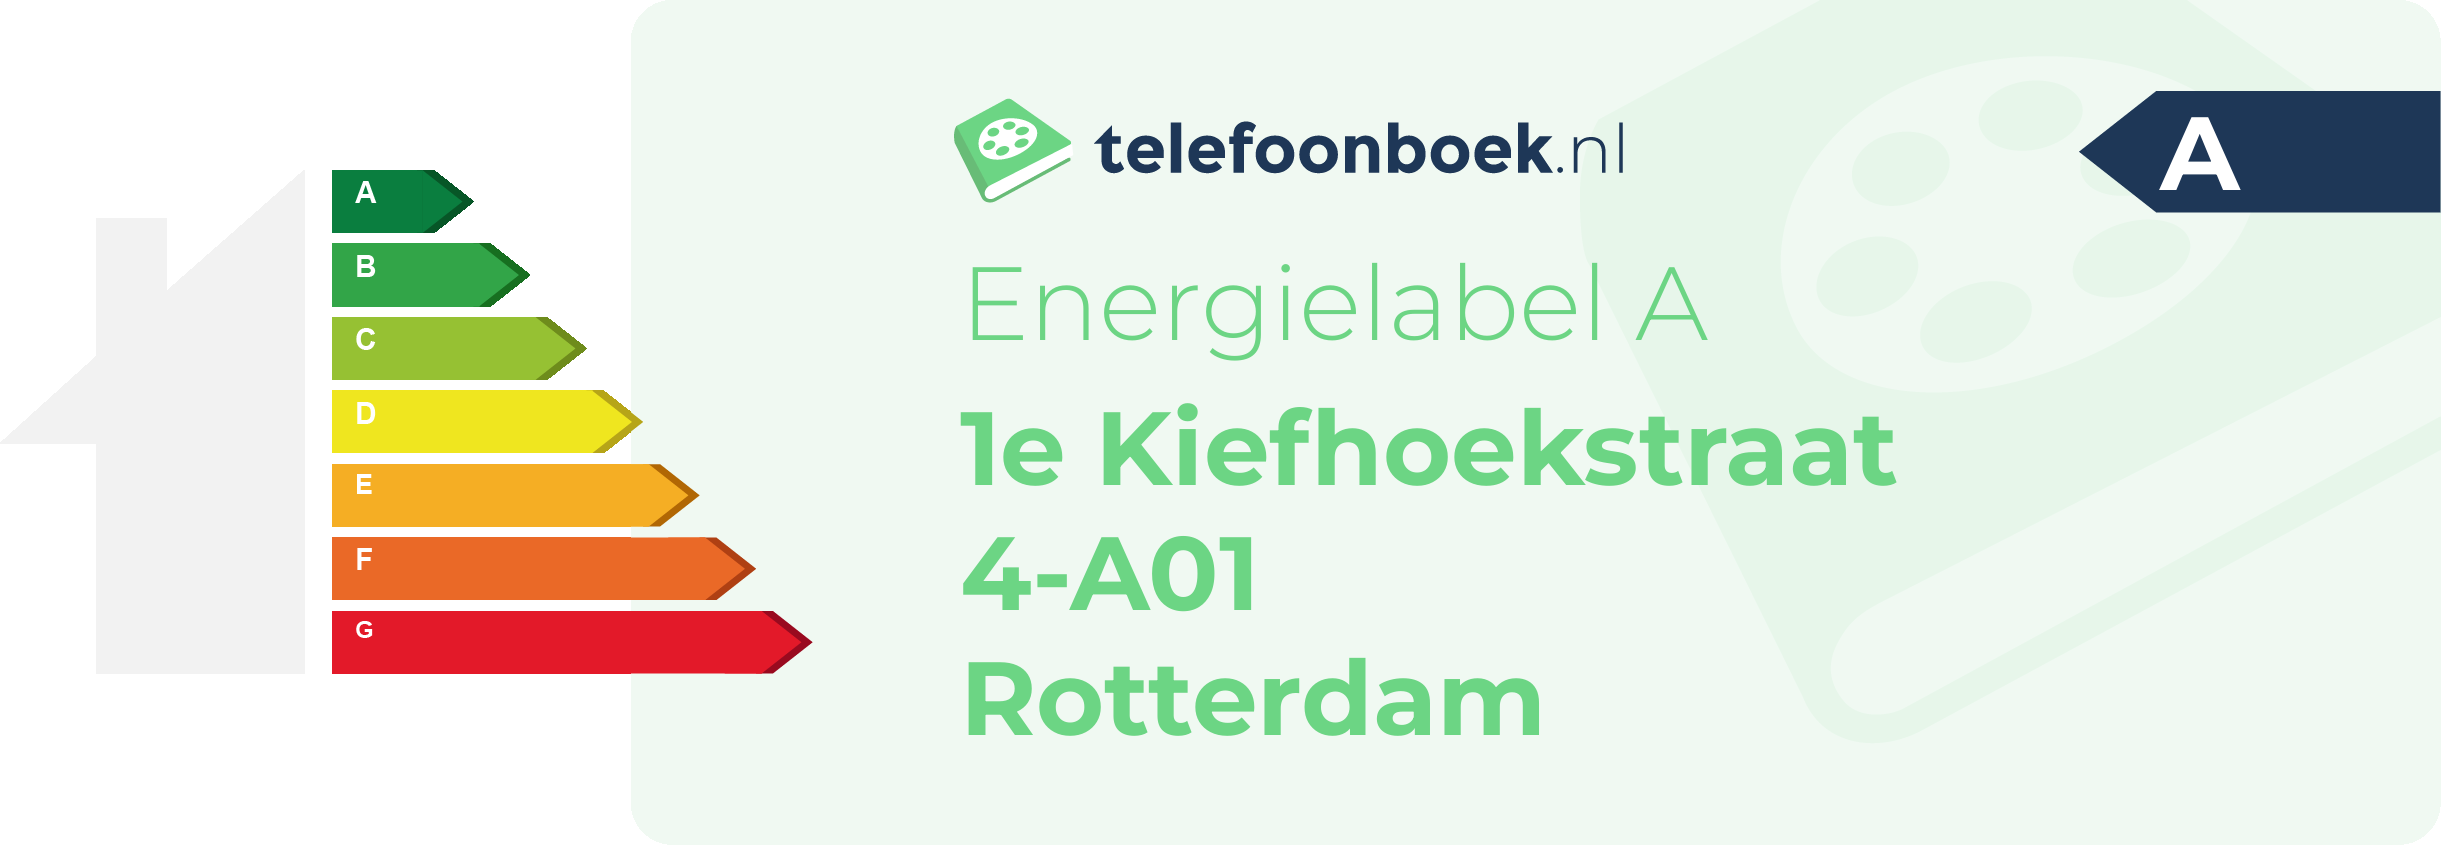 Energielabel 1e Kiefhoekstraat 4-A01 Rotterdam